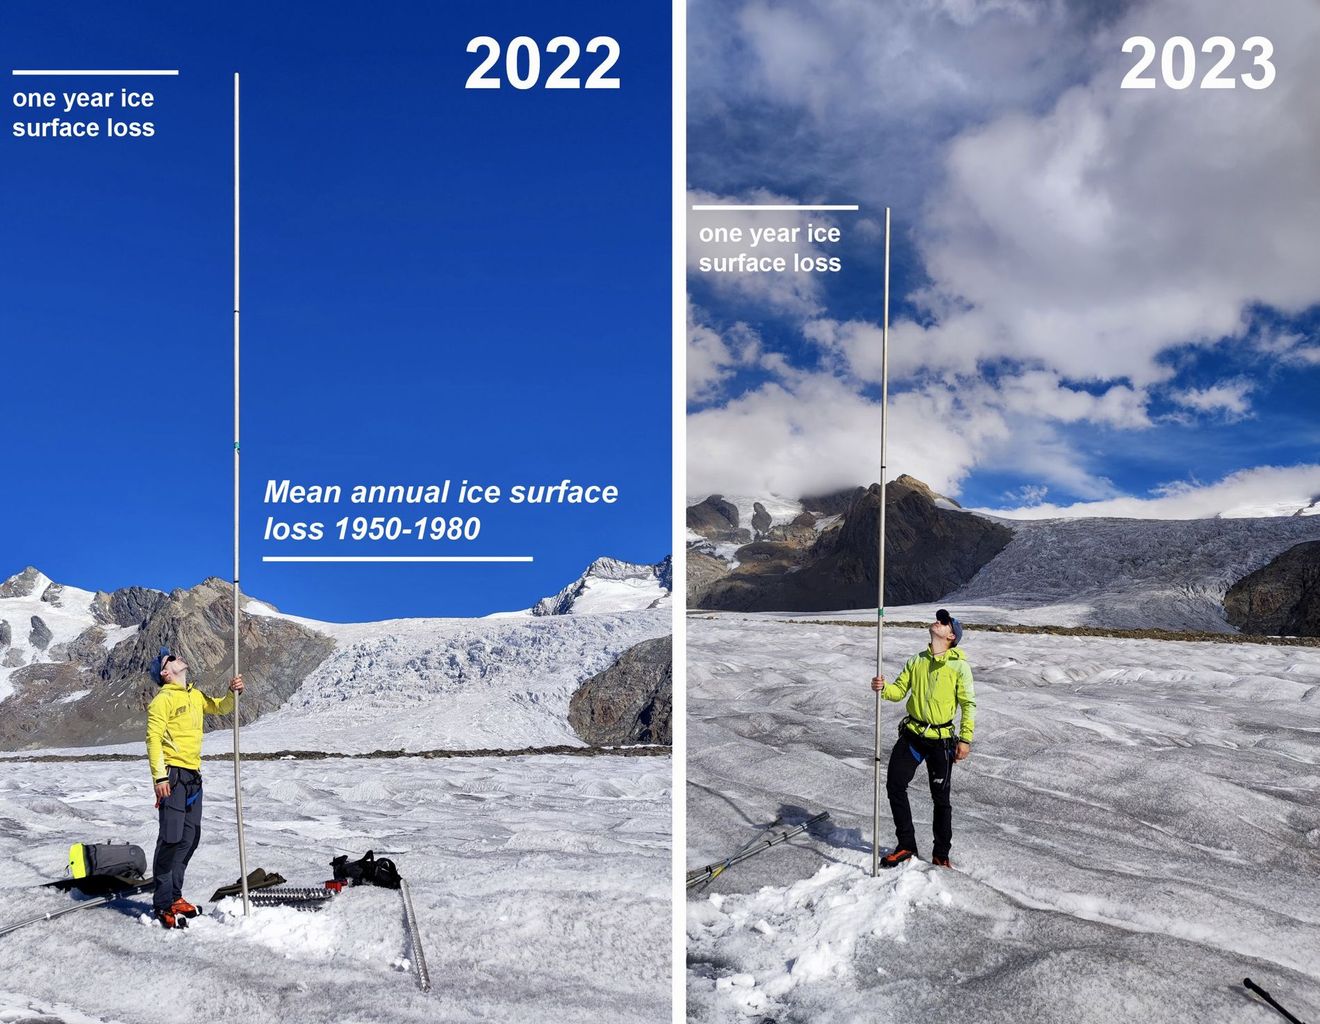 En 2023 (à droite), la Place de la Concorde du Grand glacier d’Aletsch a perdu 4,7 mètres de glace, et 6,3 mètres en 2022 (à gauche). Entre 1950 et 1980, la perte d’épaisseur annuelle s’élevait à 2,5 mètres en moyenne.